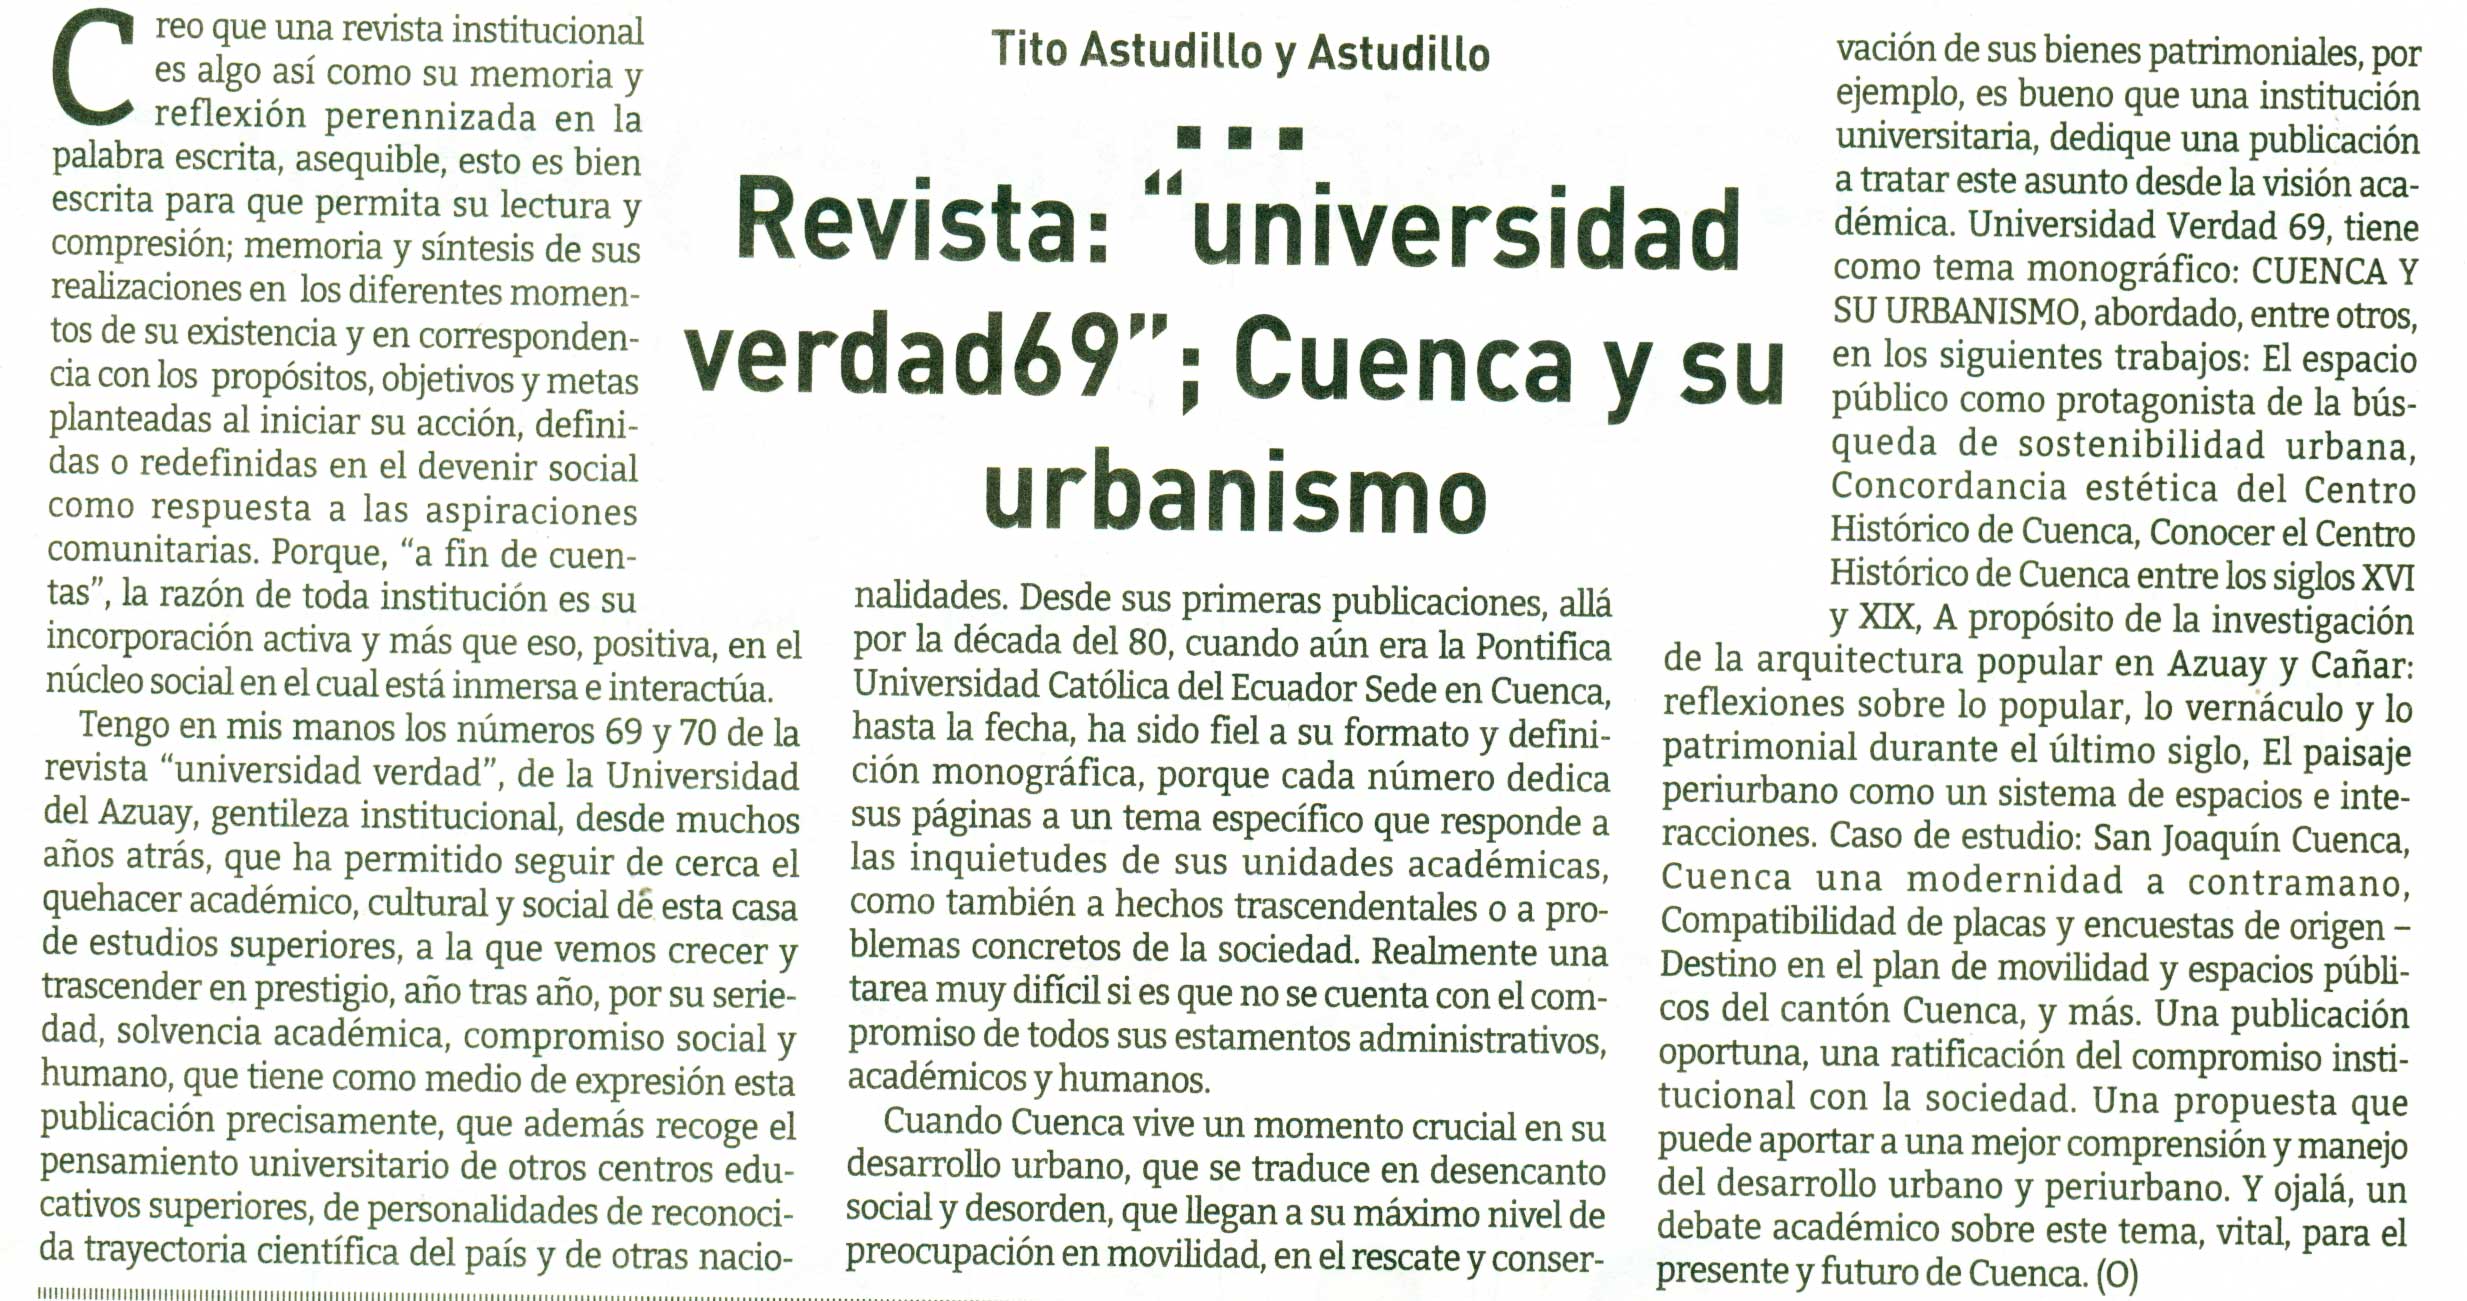 Revista: “Universidad verdad 69”; Cuenca y su urbanismo 